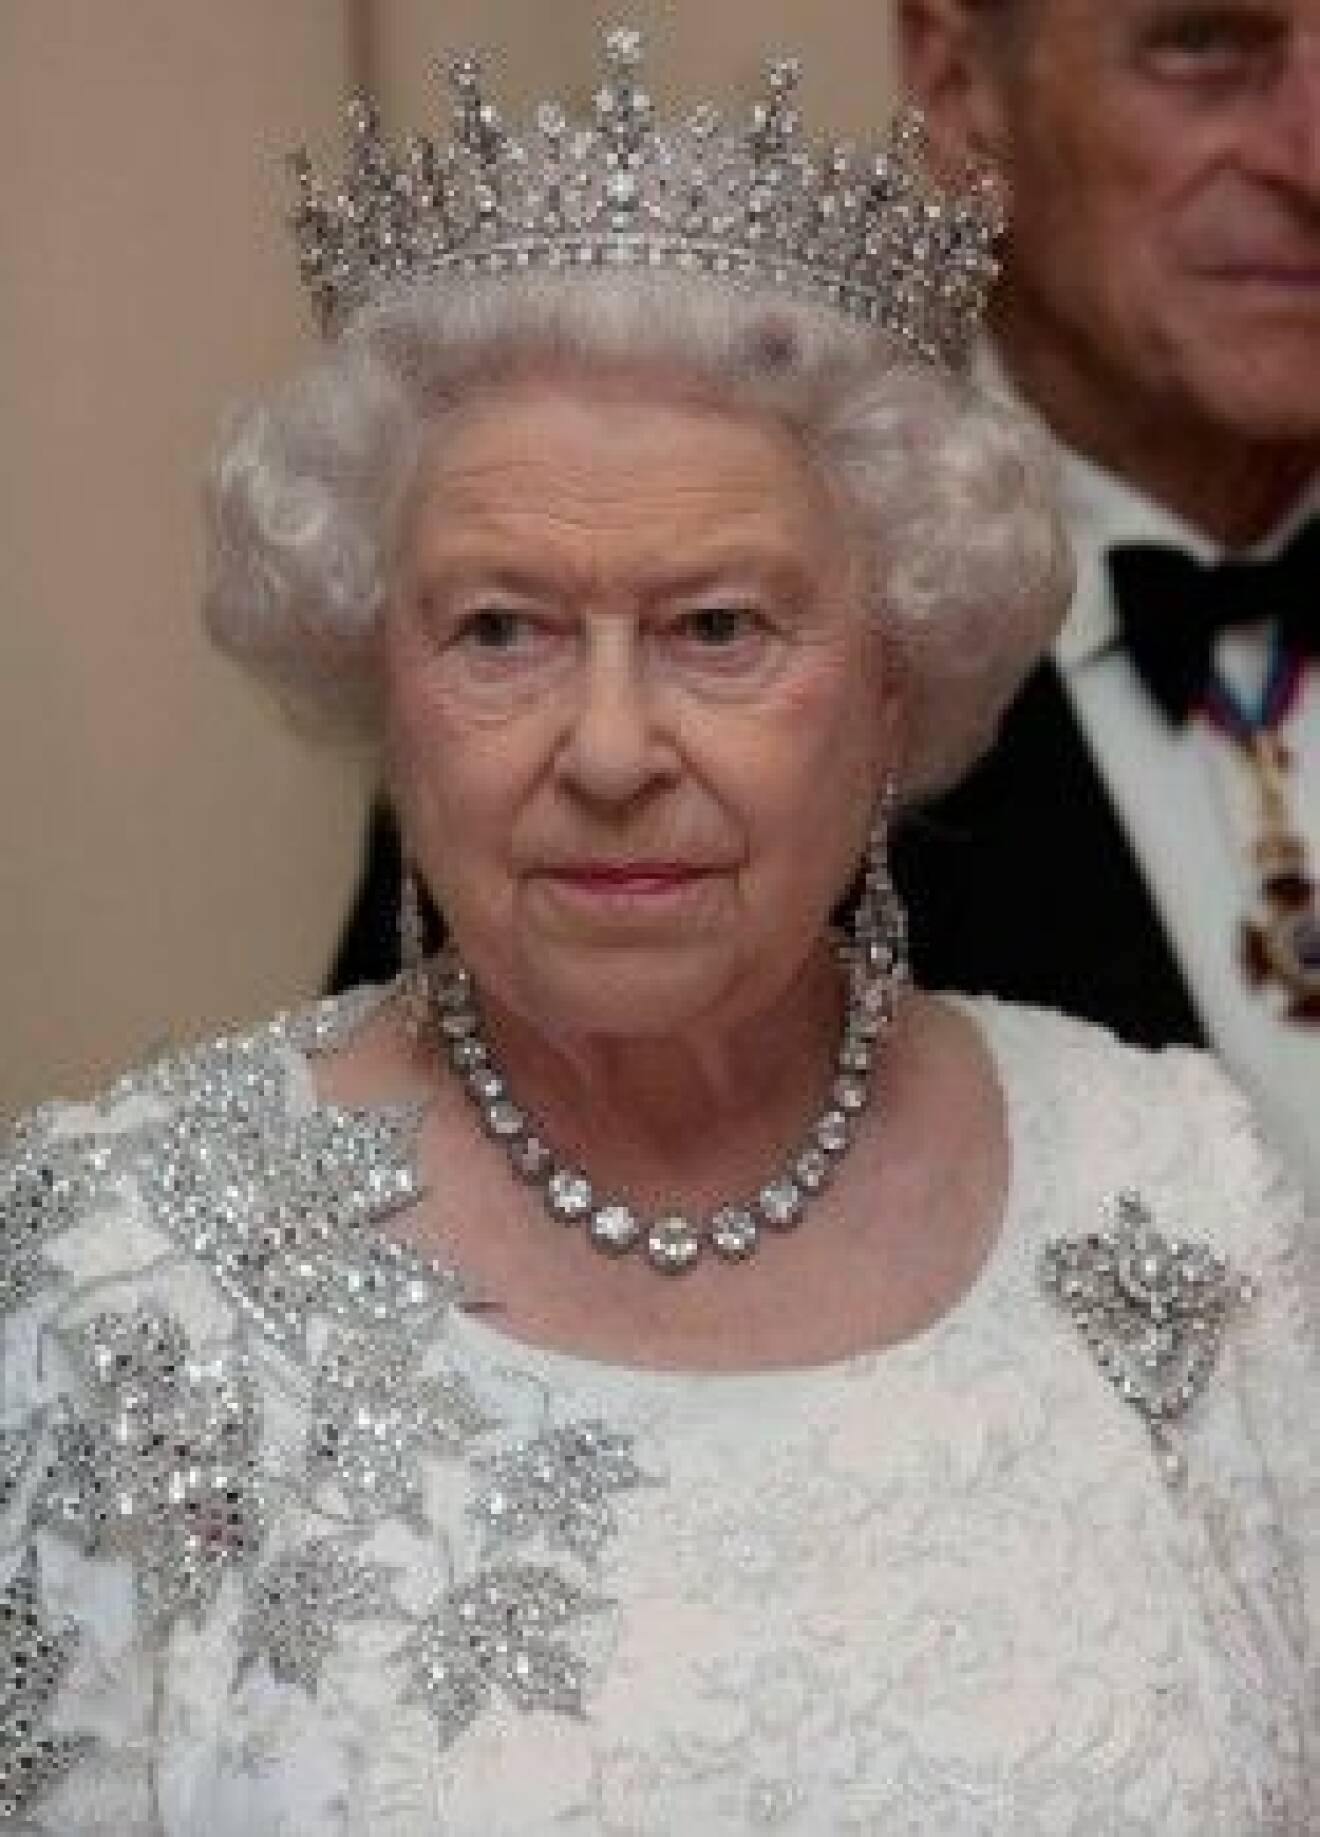 Elizabeth med sina glittriga applikationer och ljuvliga juveler.